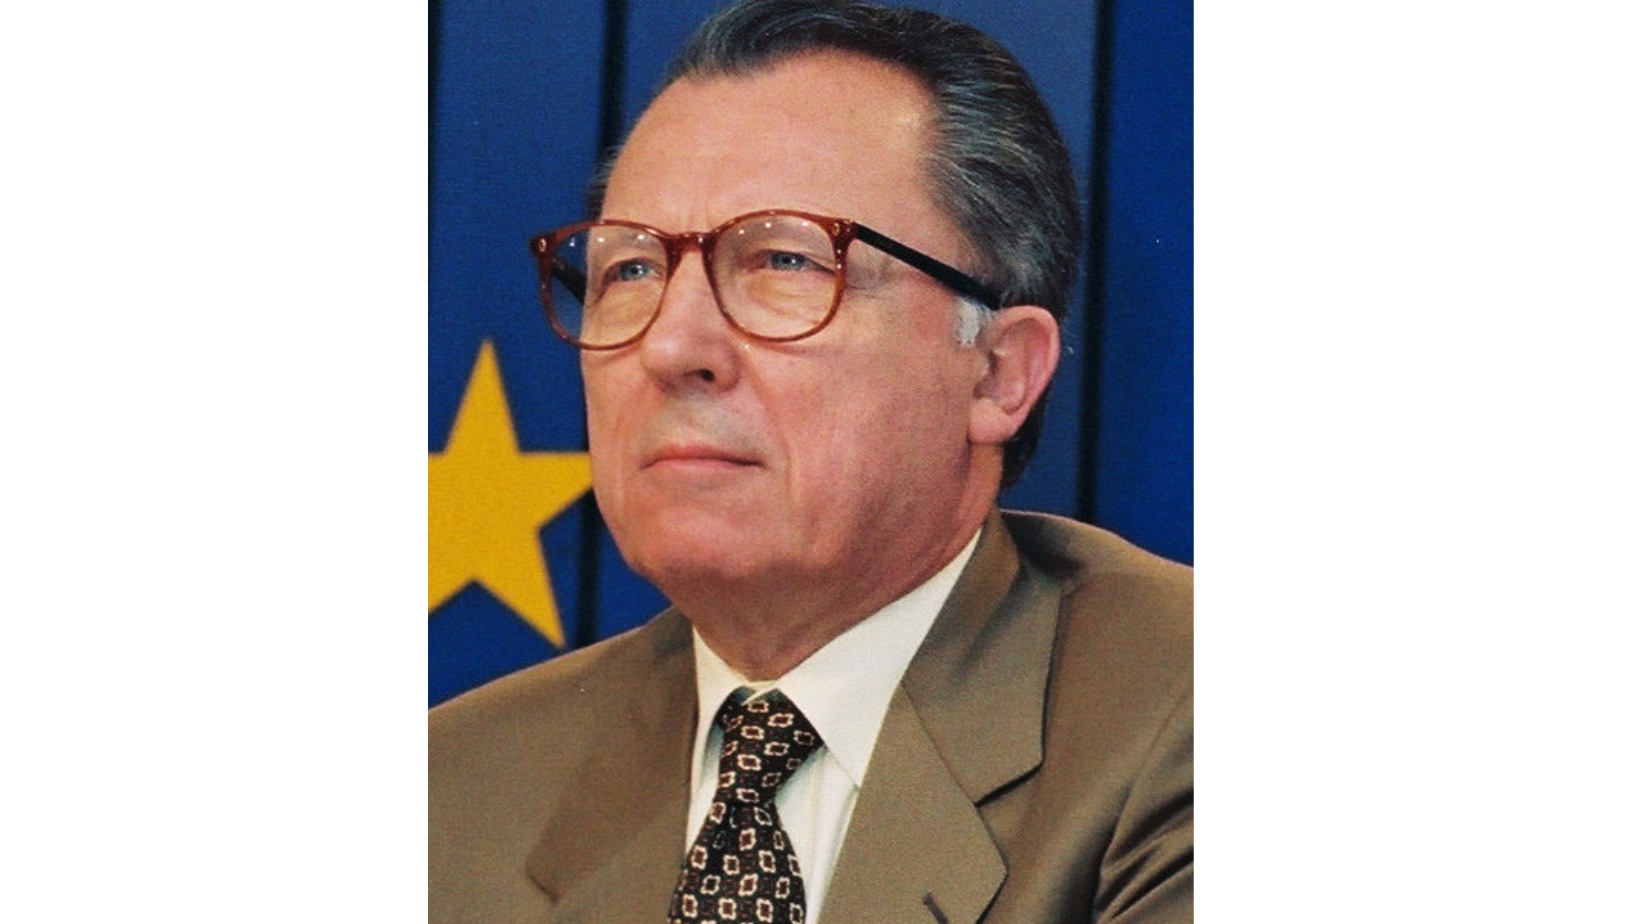     Figure de la construction européenne, l’ancien ministre Jacques Delors est décédé

